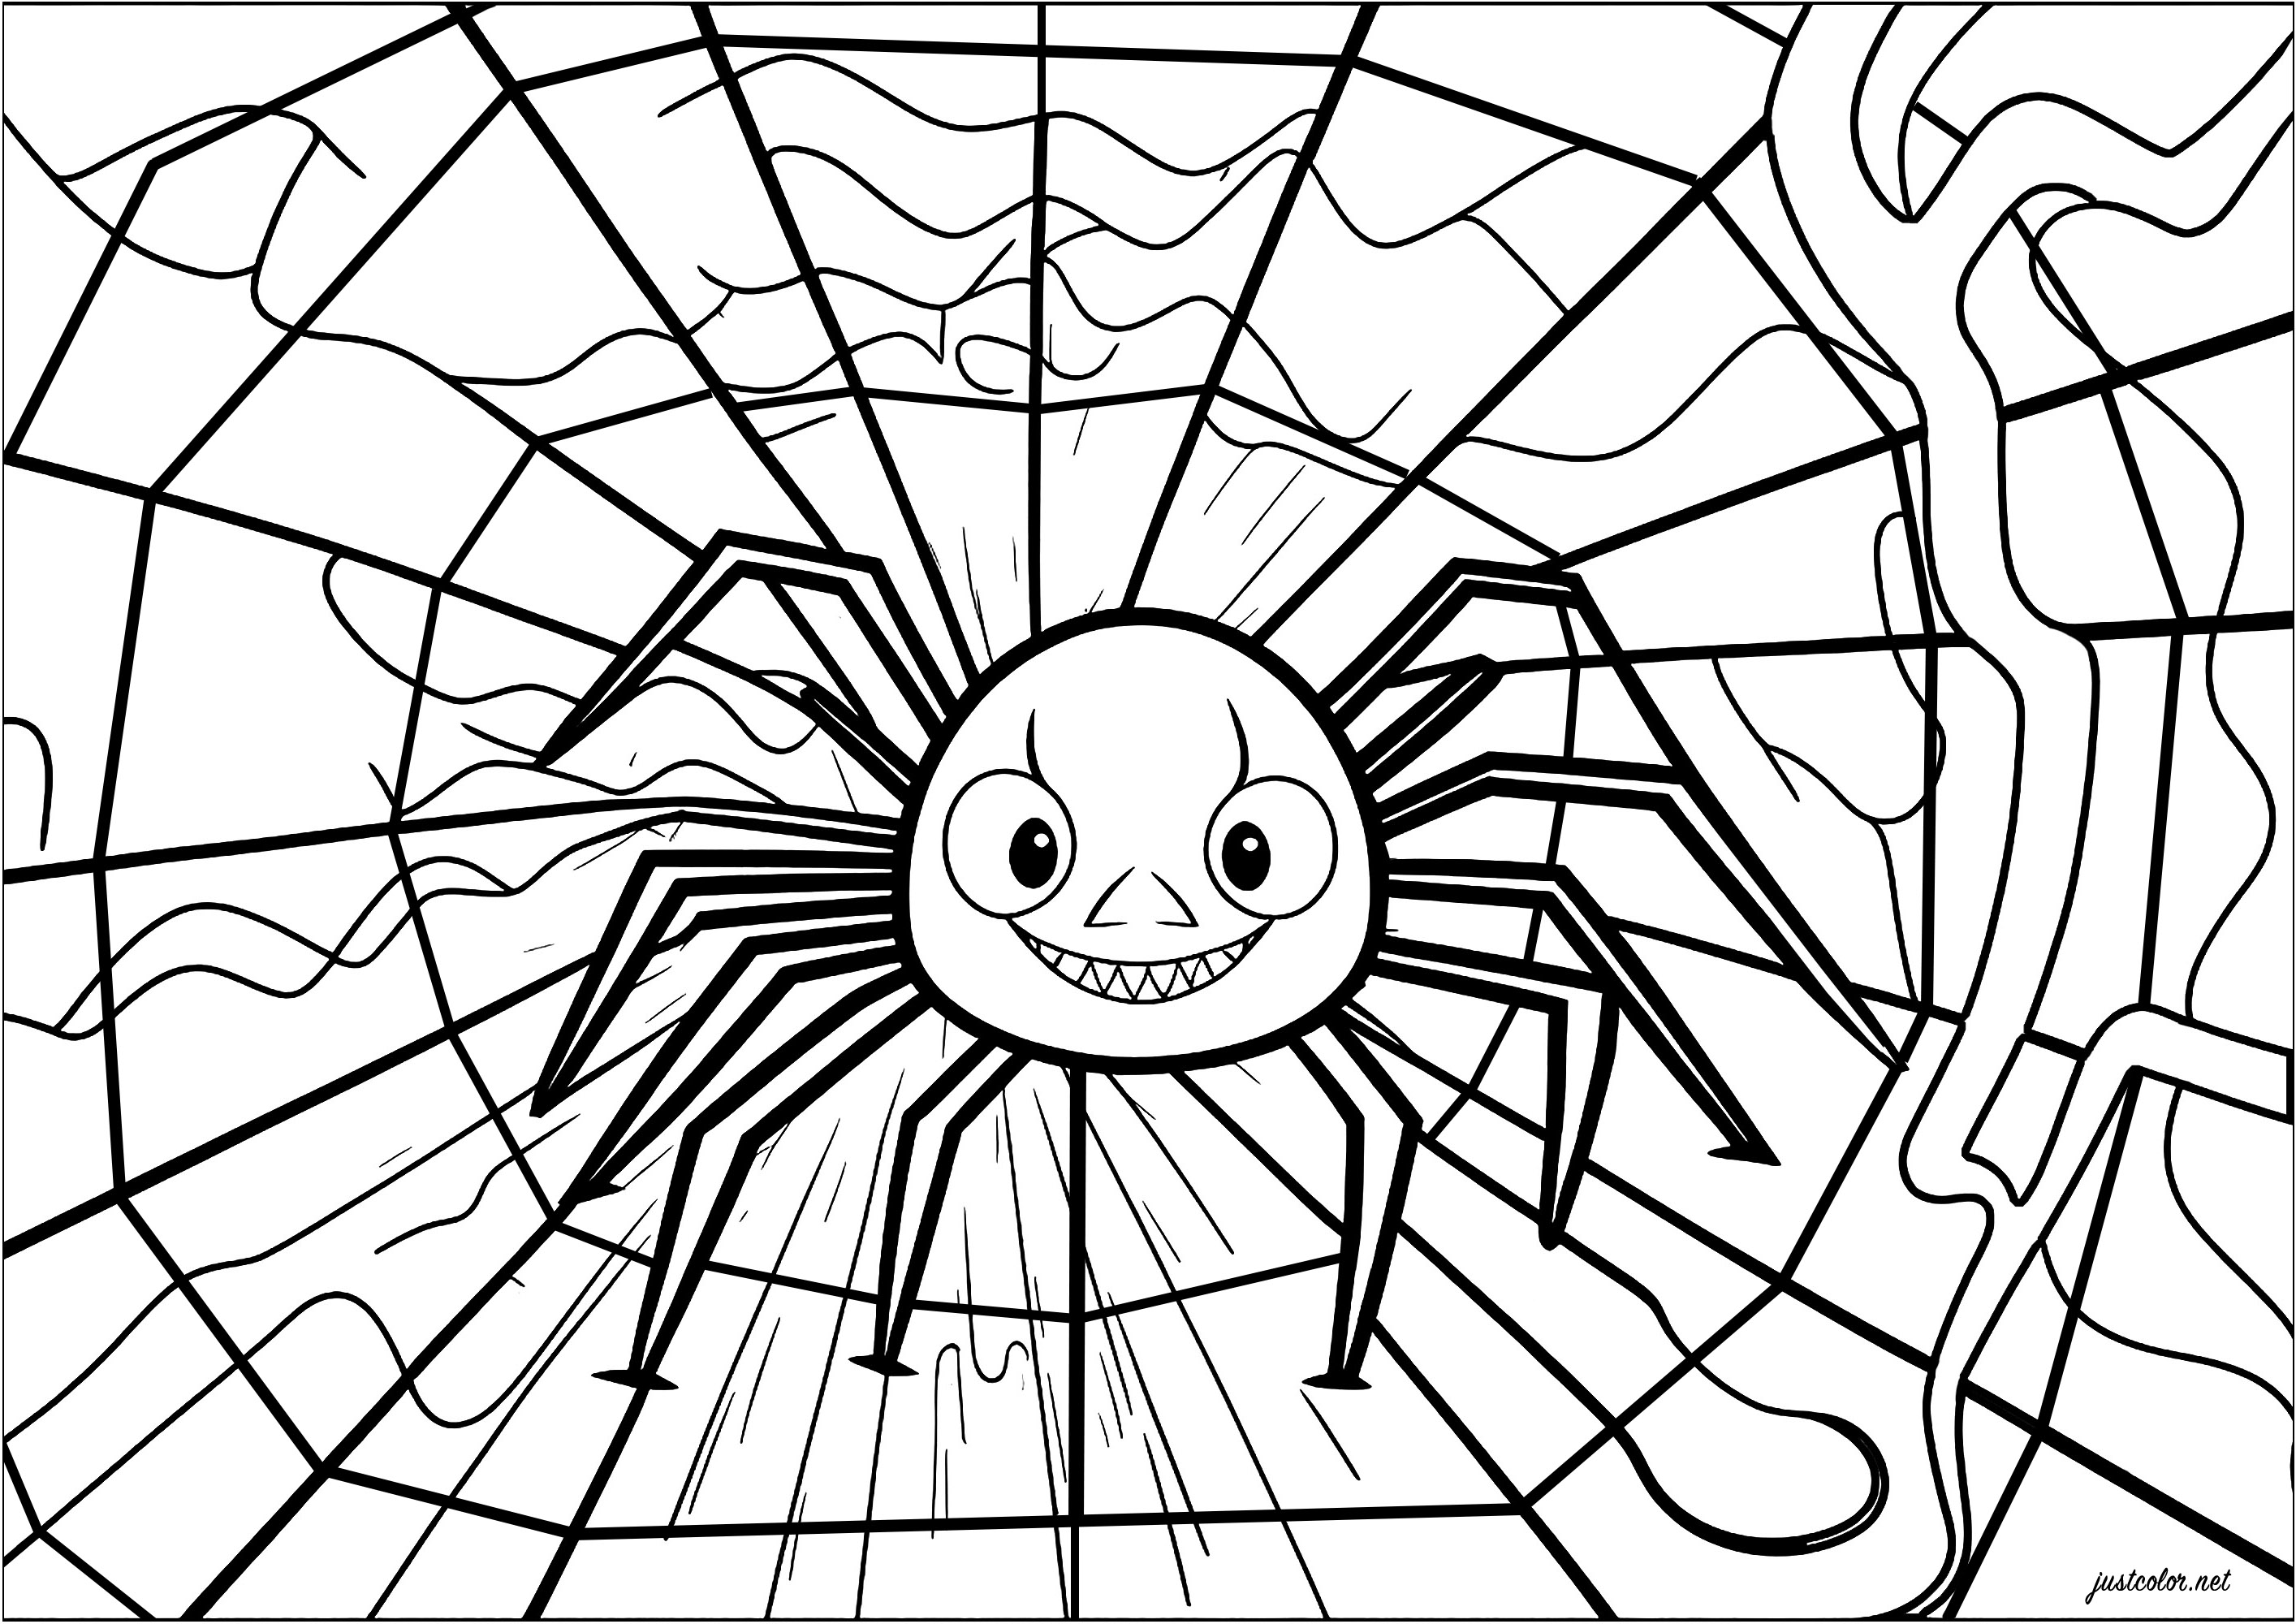 Une araignée souriante bien installée dans sa toile